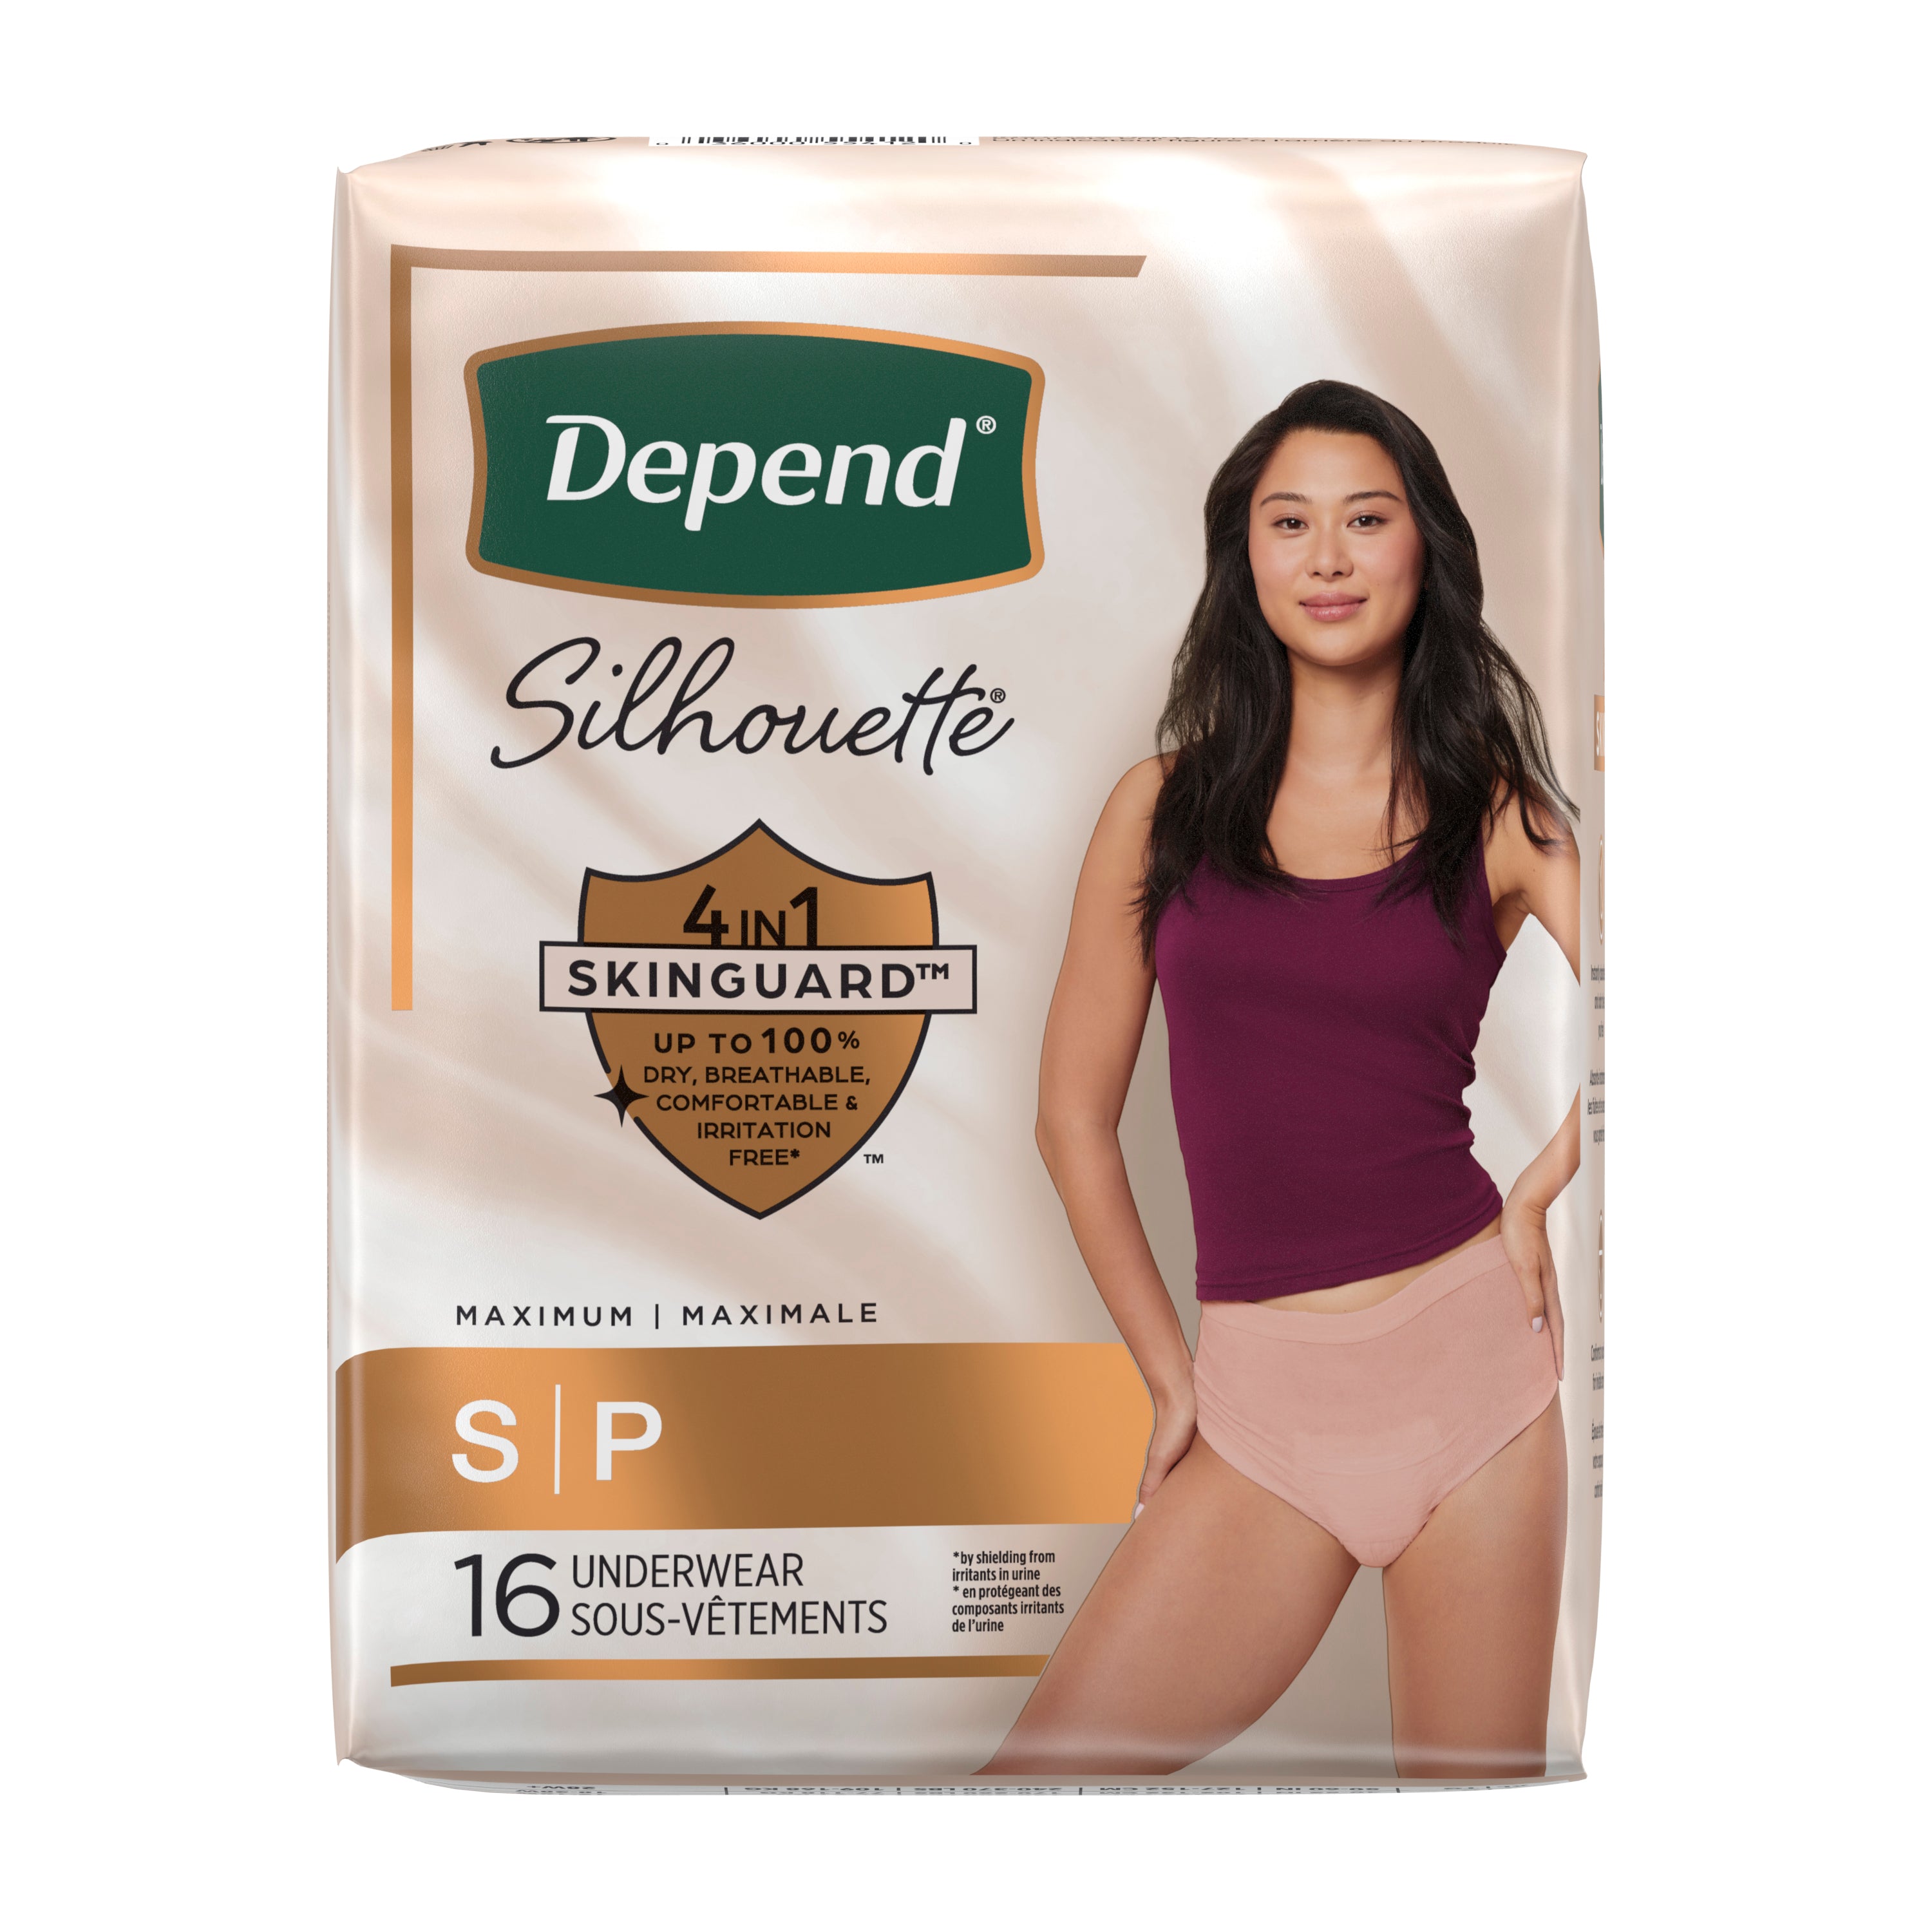 Depend Super Premium Silhouette Underwear for Women